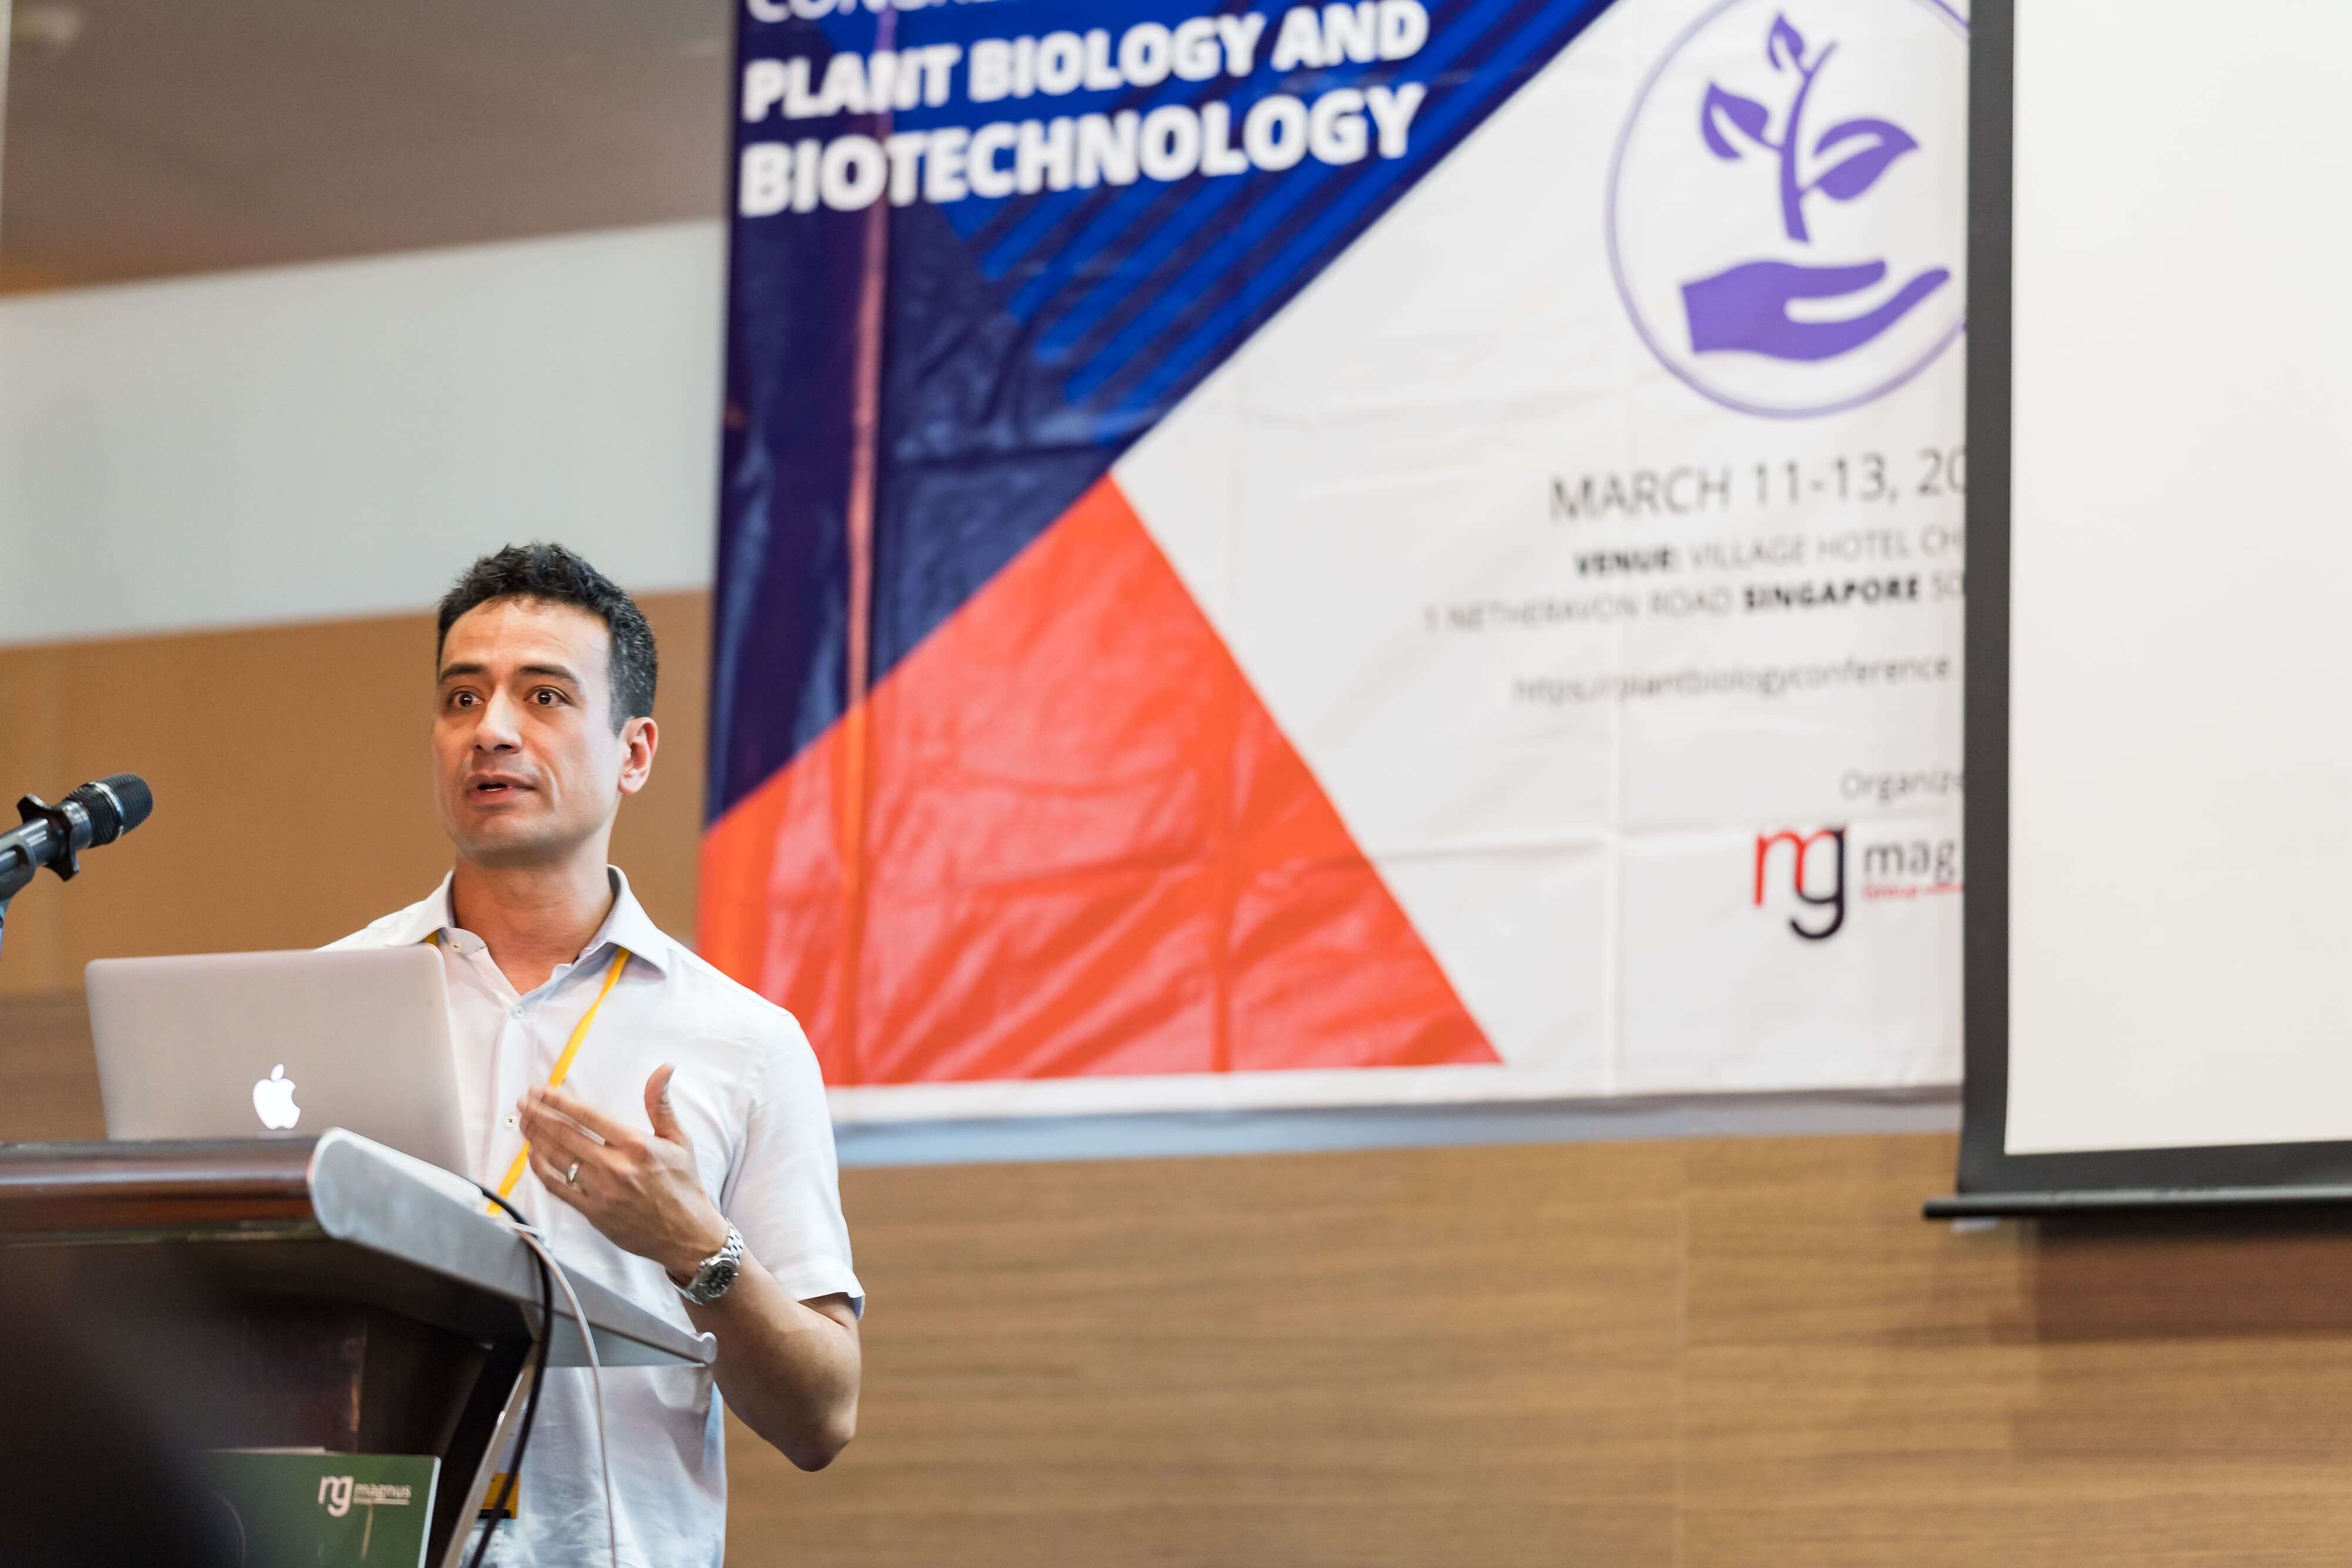 Plant Biology Conferences